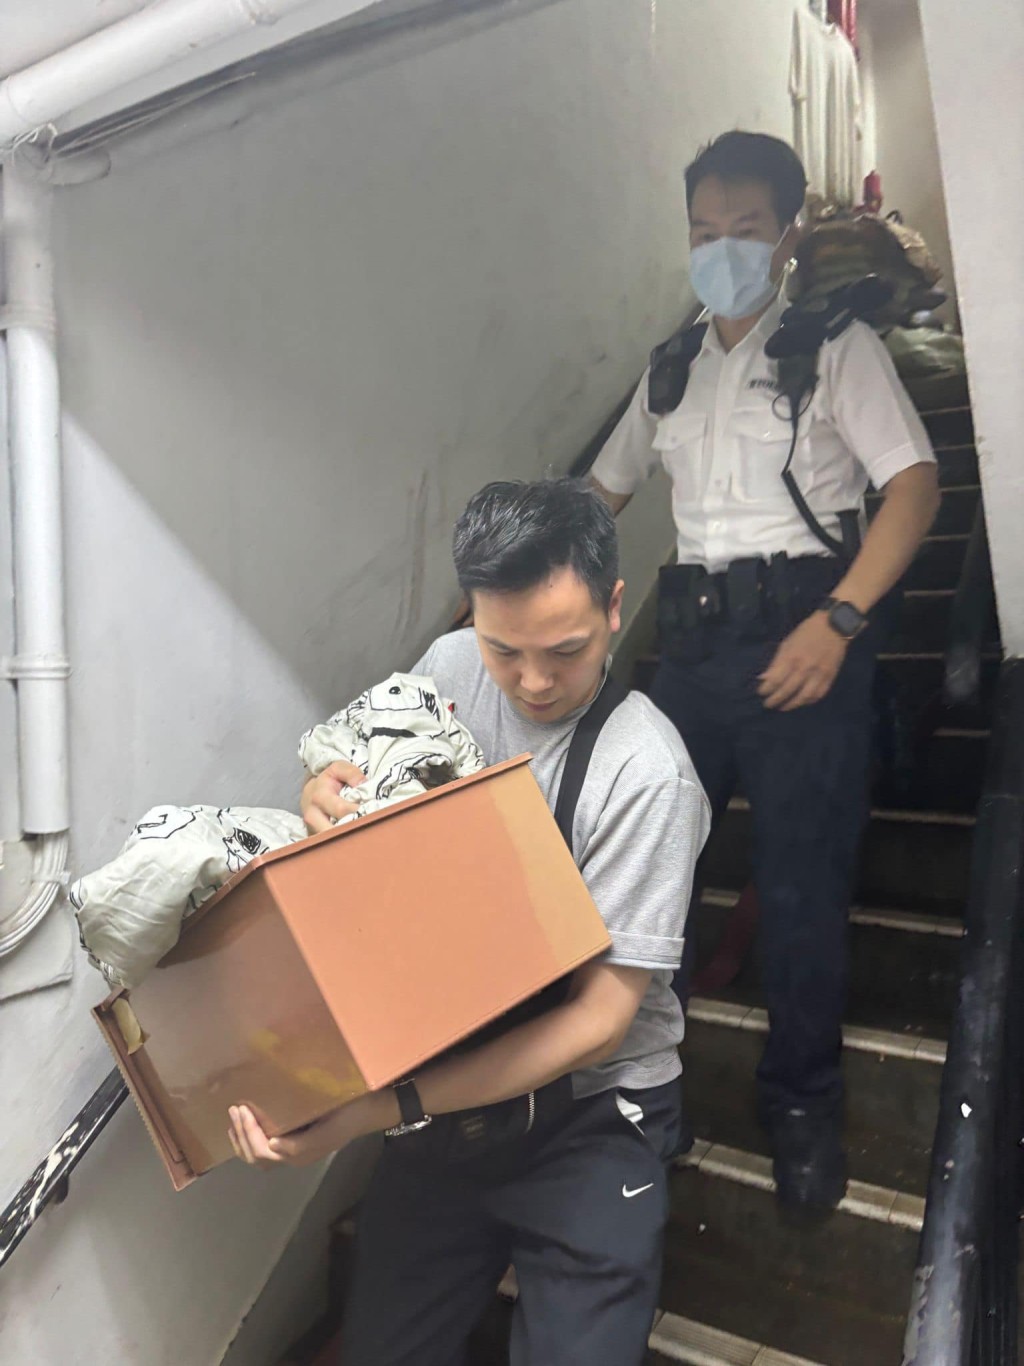 新界南衝鋒隊隊員在一個單位內救出一隻受驚家貓，並將牠安全交回主人身邊照顧。香港警察fb圖片